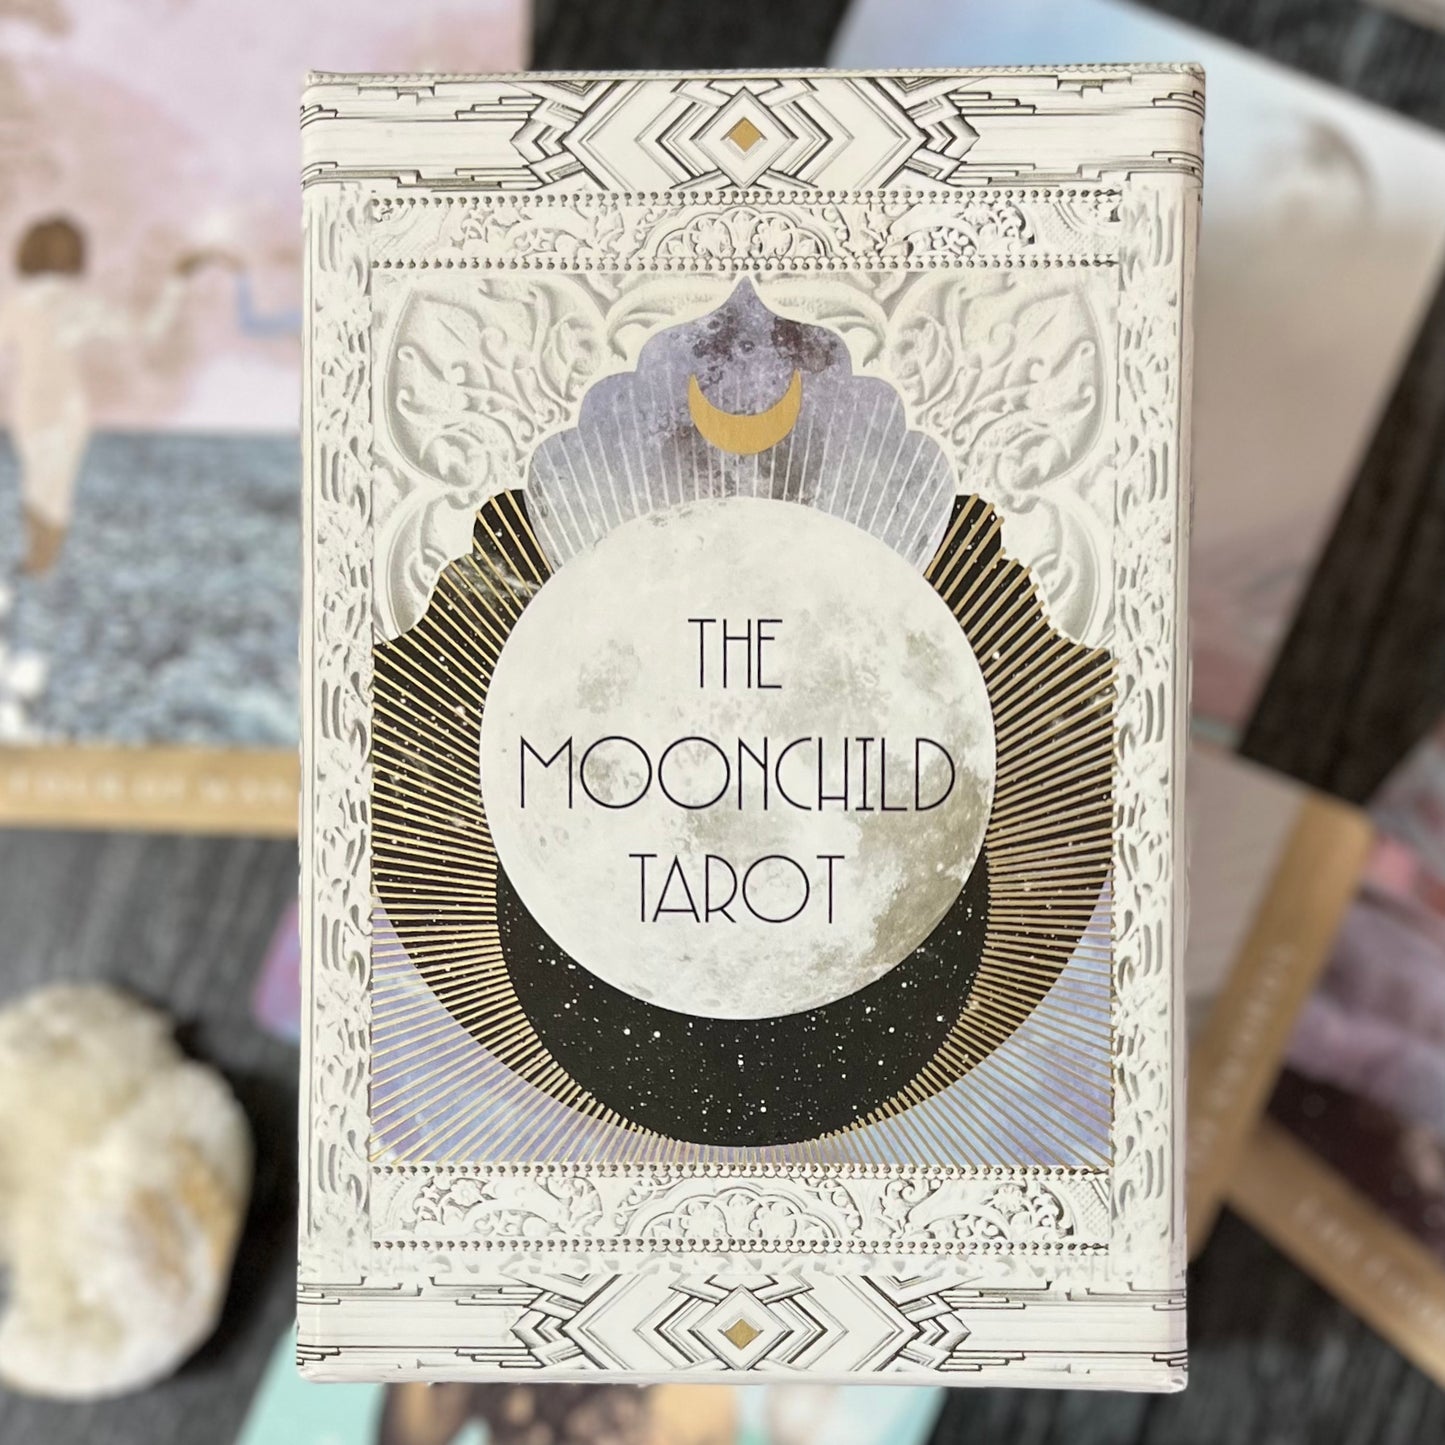 Moonchild Tarot